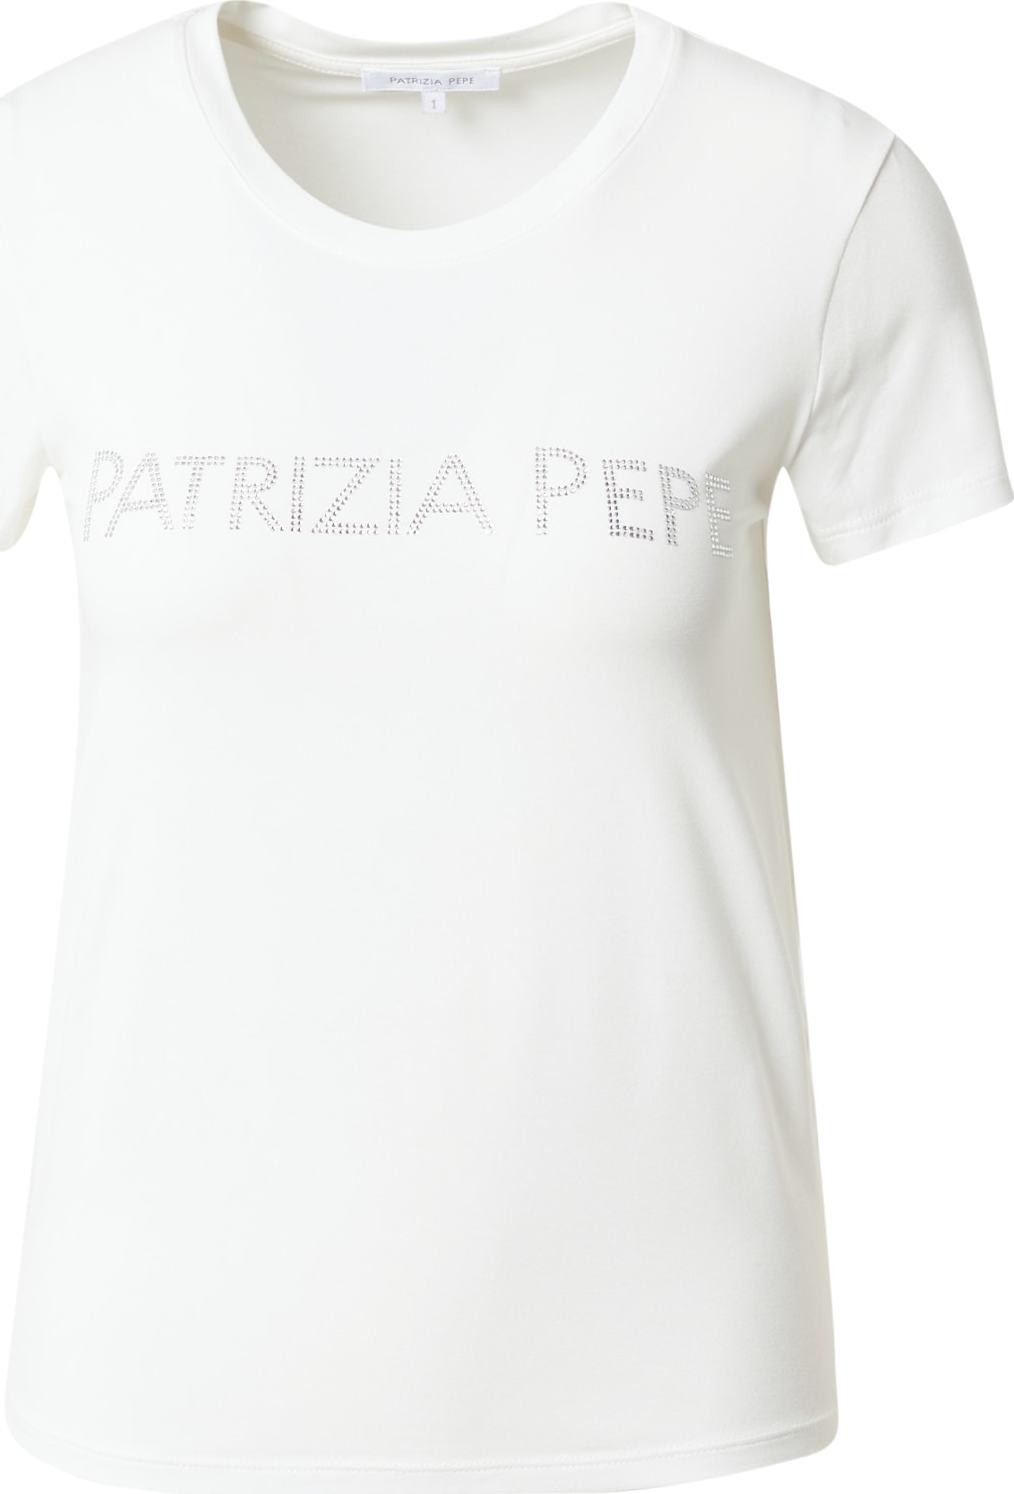 PATRIZIA PEPE Tričko stříbrná / bílá